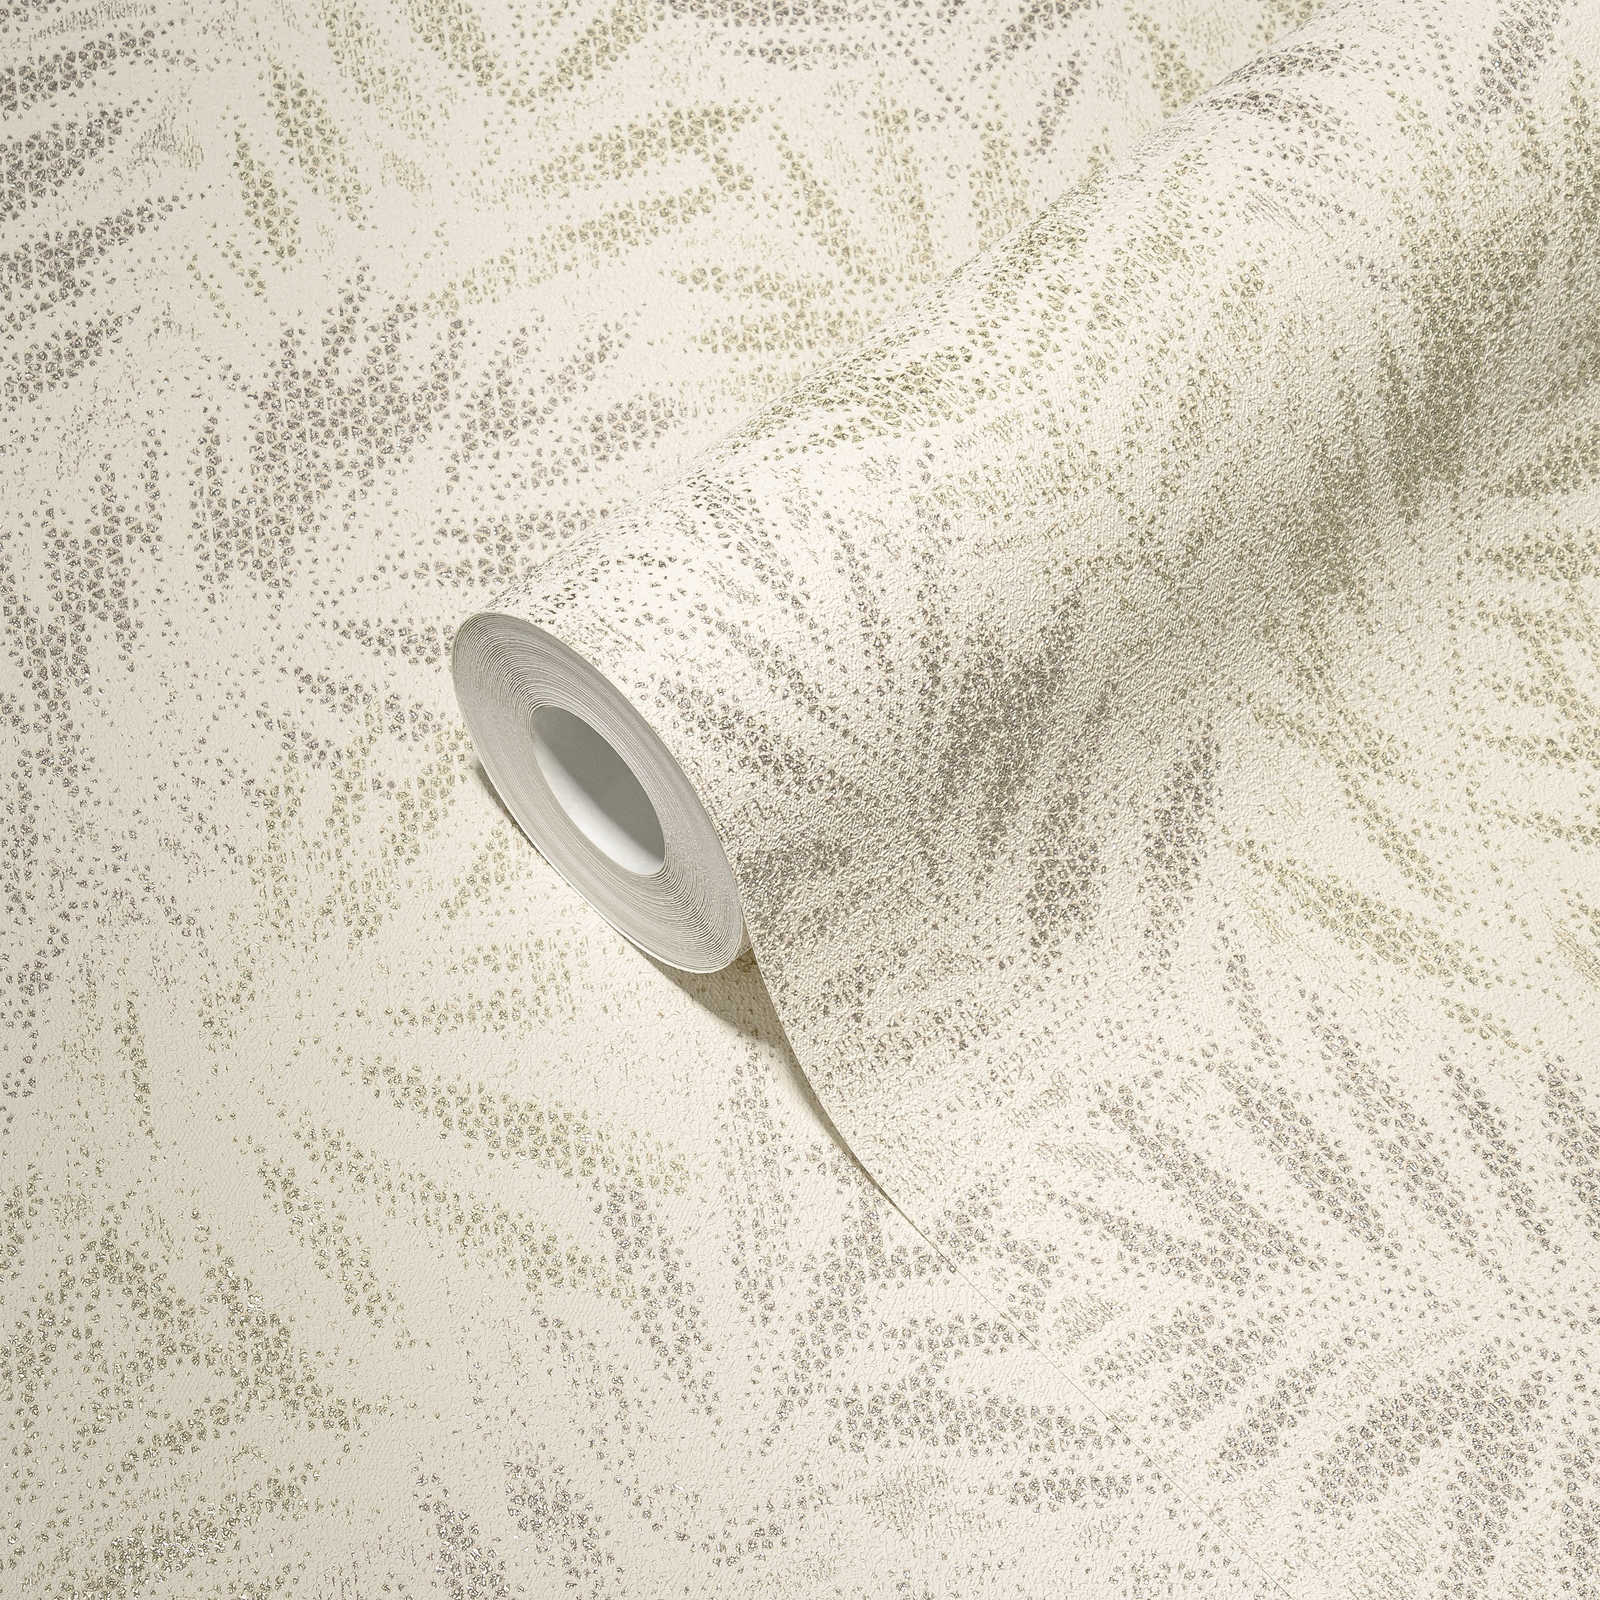             Vliesbehang met glanzend bladmotief - wit, grijs, zilver
        